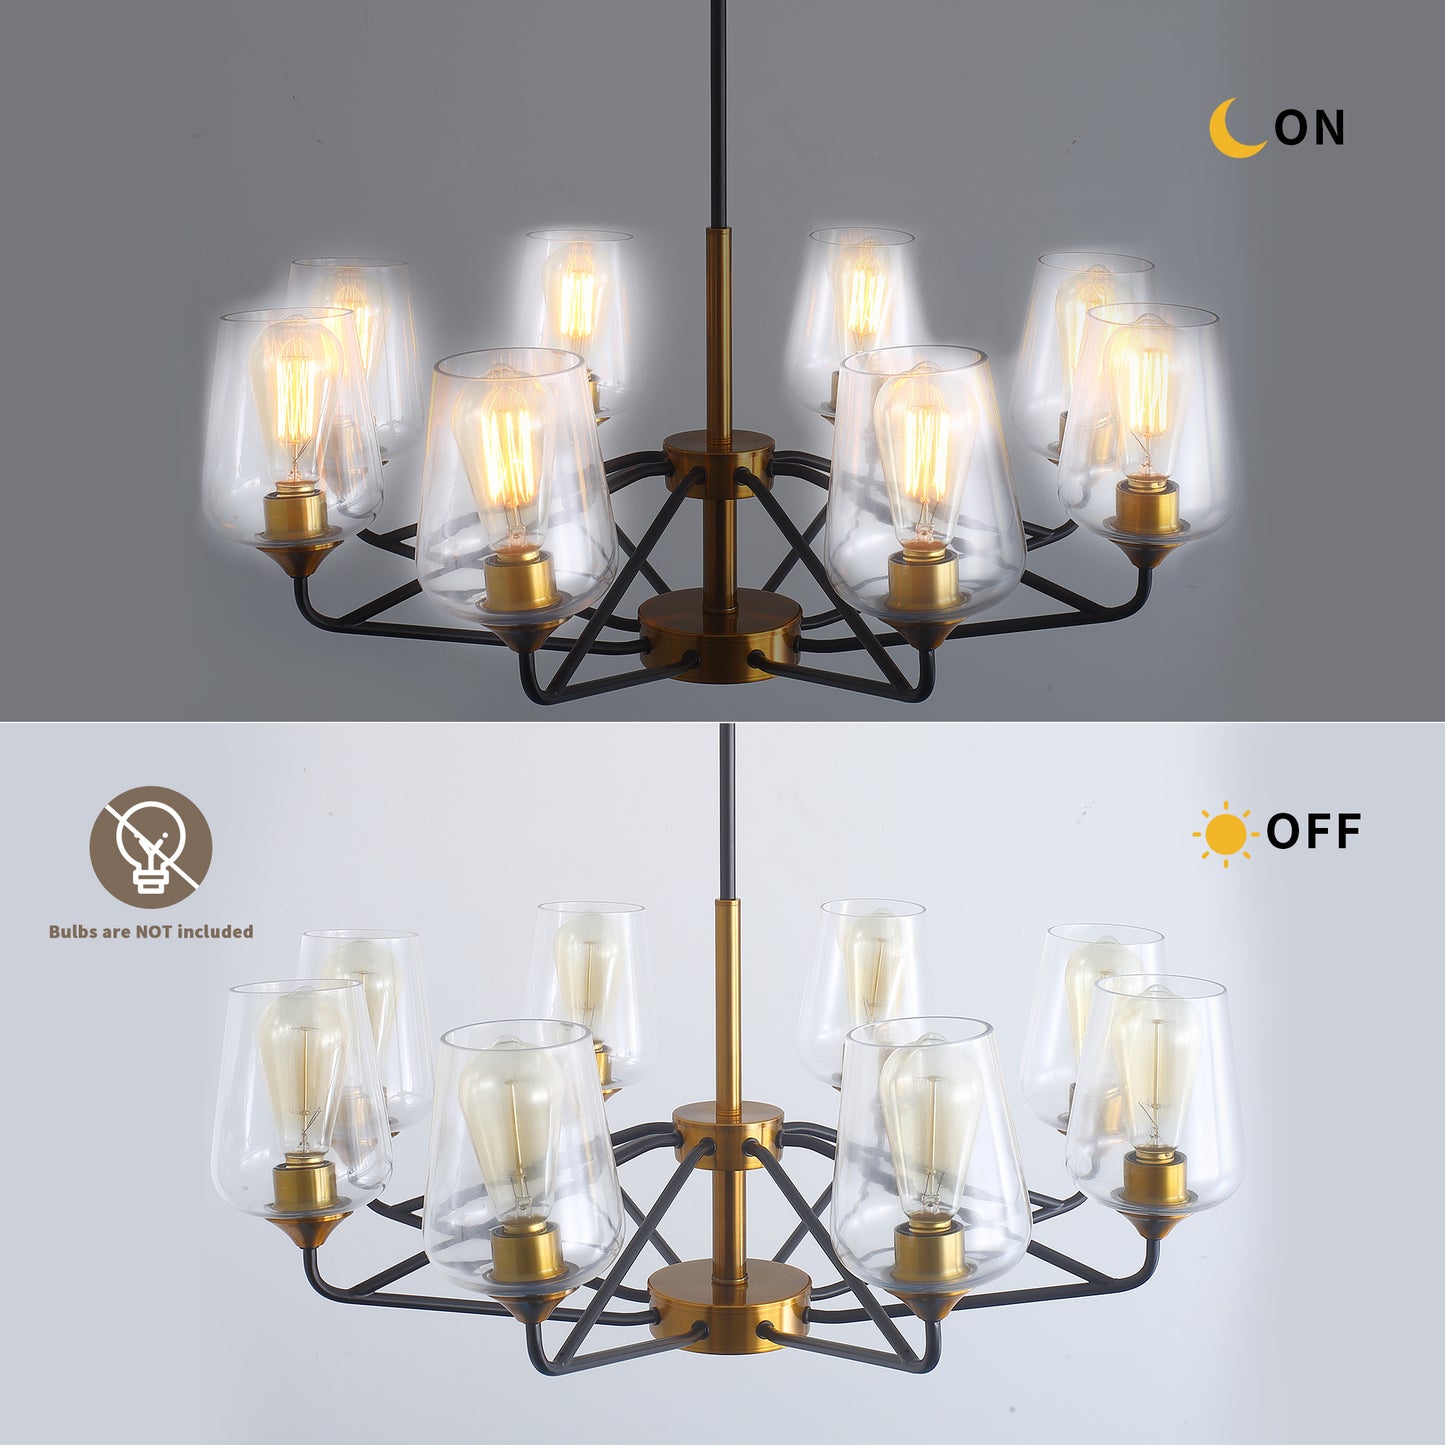 Modern American hanging chandelier -8 bulbs -E26 lamp holder